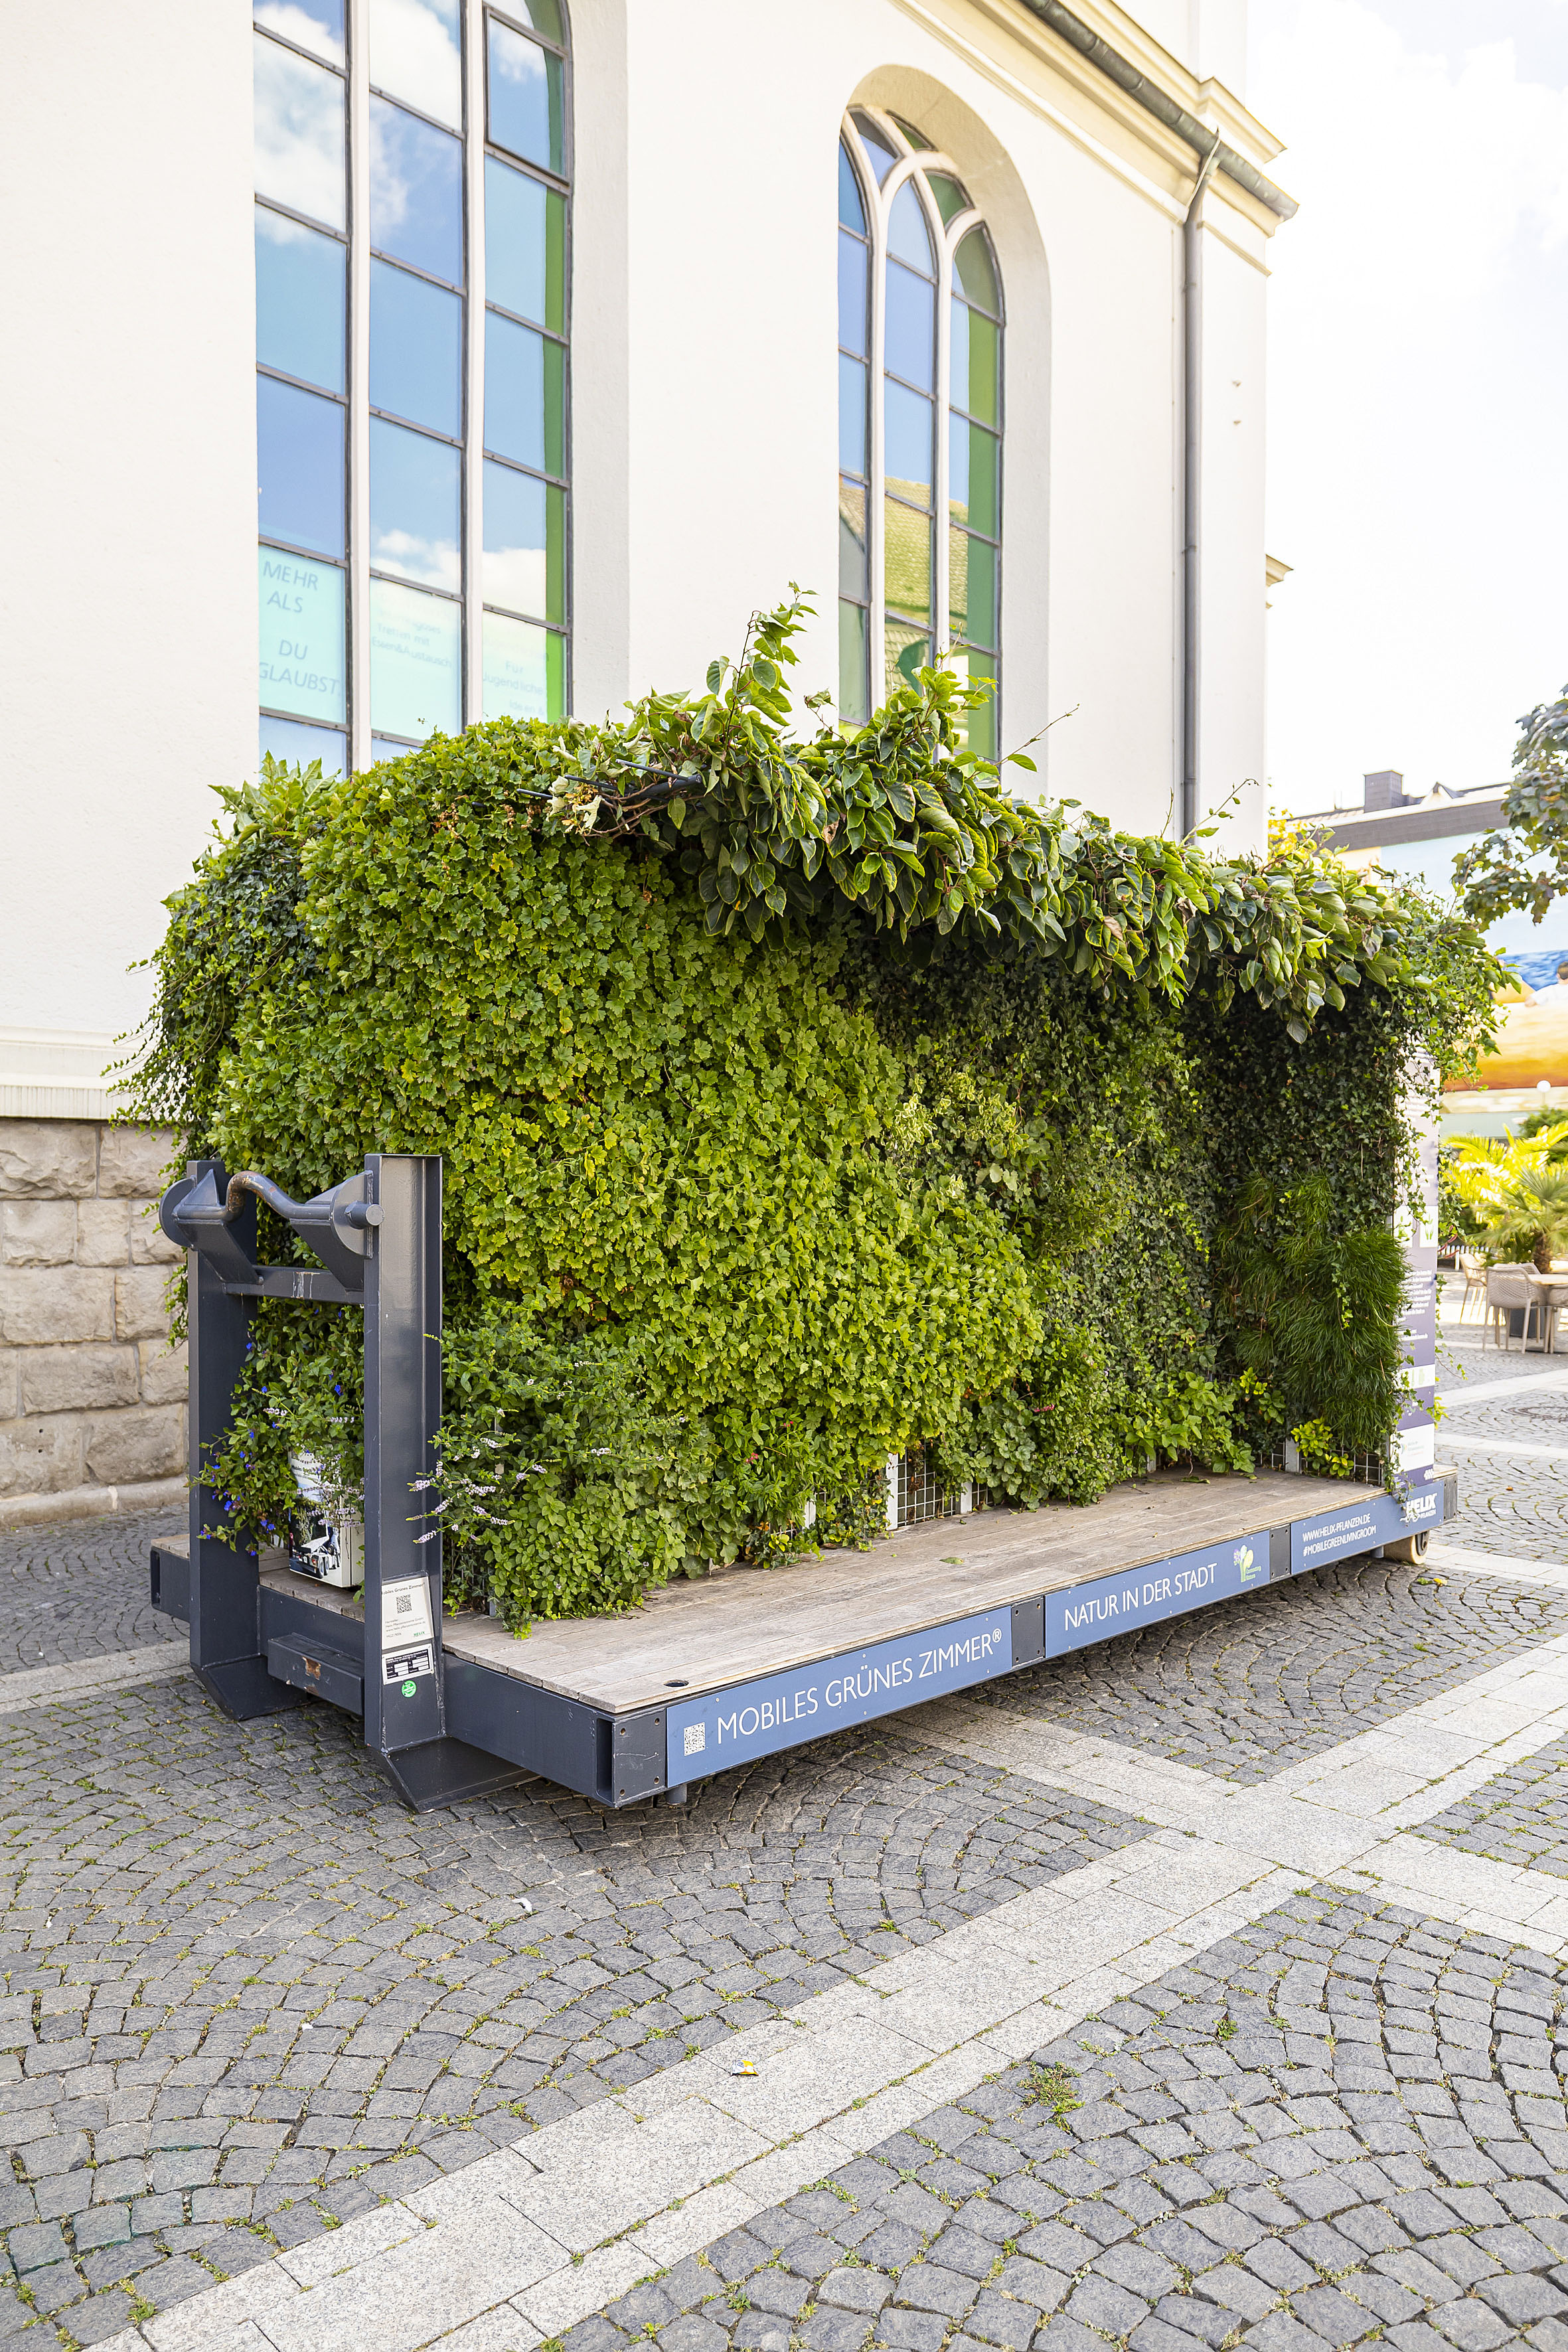 Das Foto zeigt das mobile Grüne Zimmer, eine Bank und eine Wand, die dicht mit grünen Pflanzen bewachsen ist.